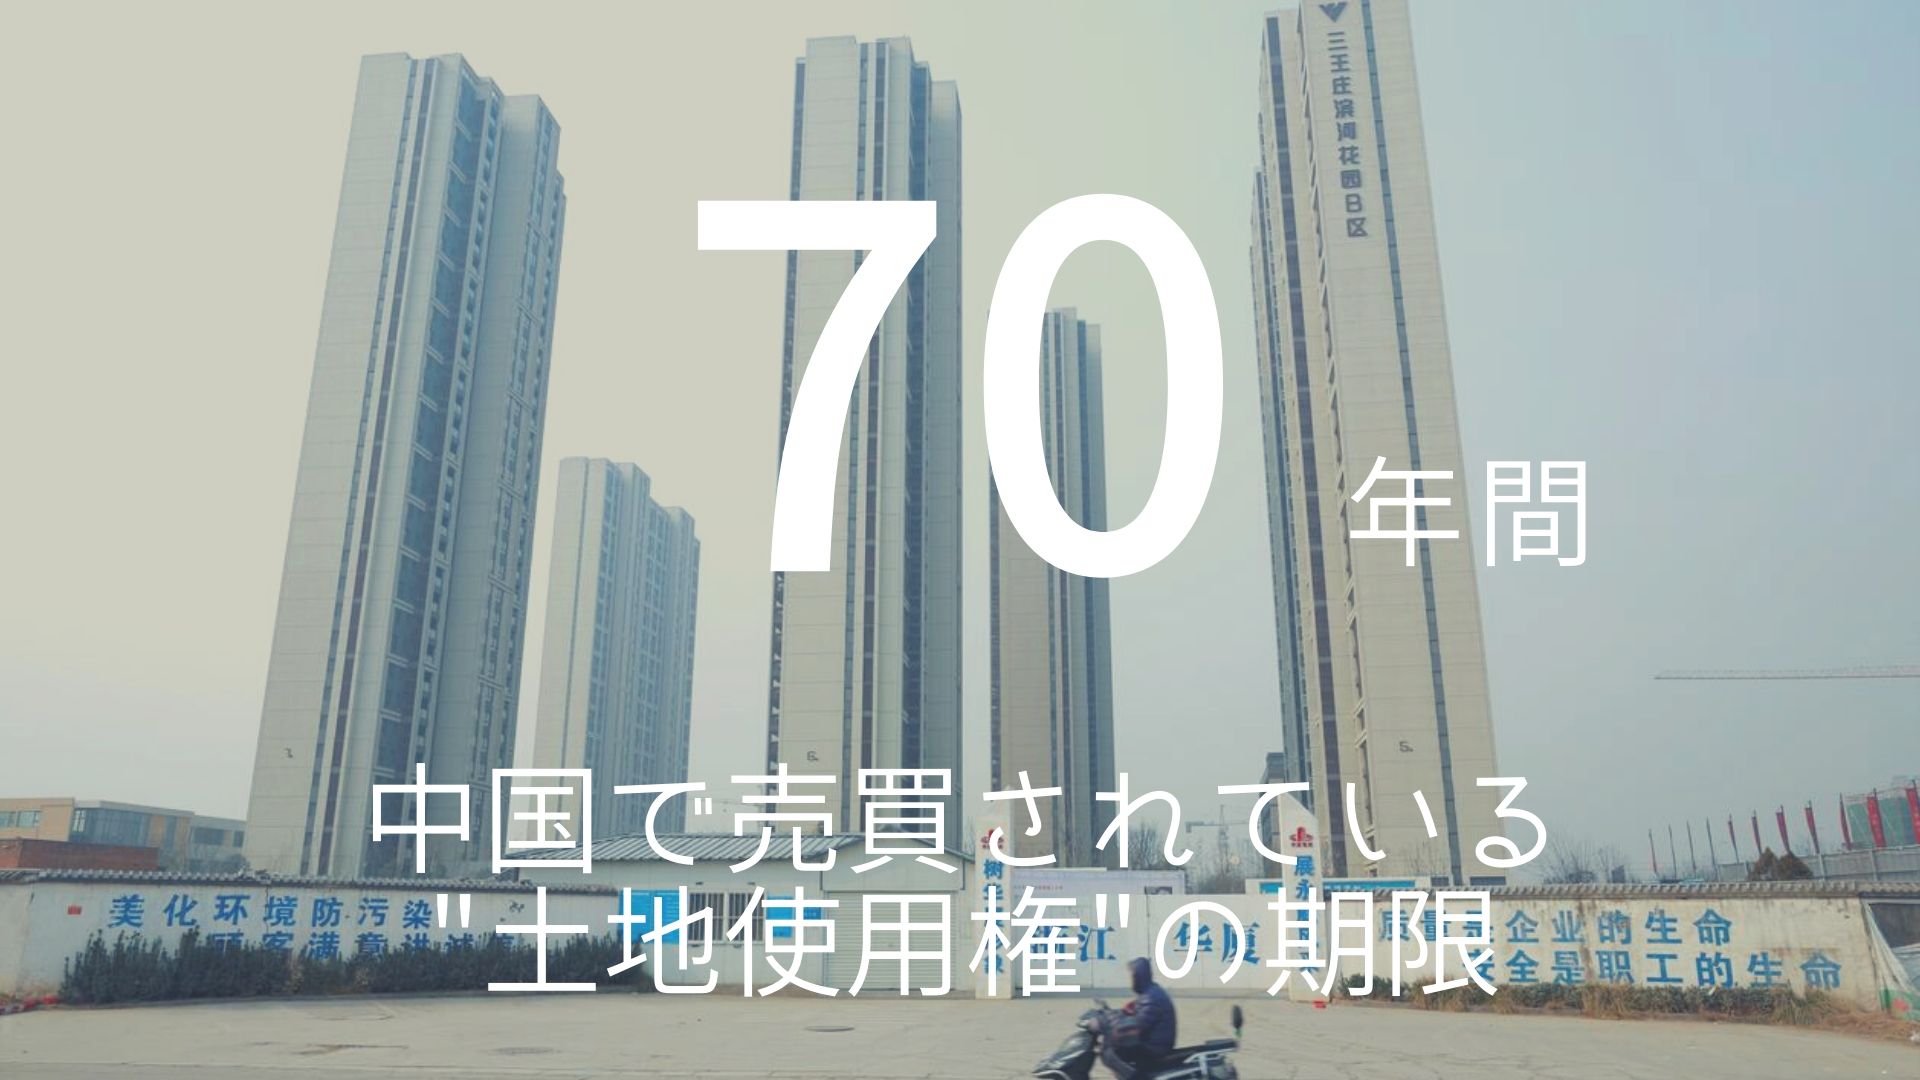 「70年間」 >>> 中国で売買されている”土地使用権”の期限。